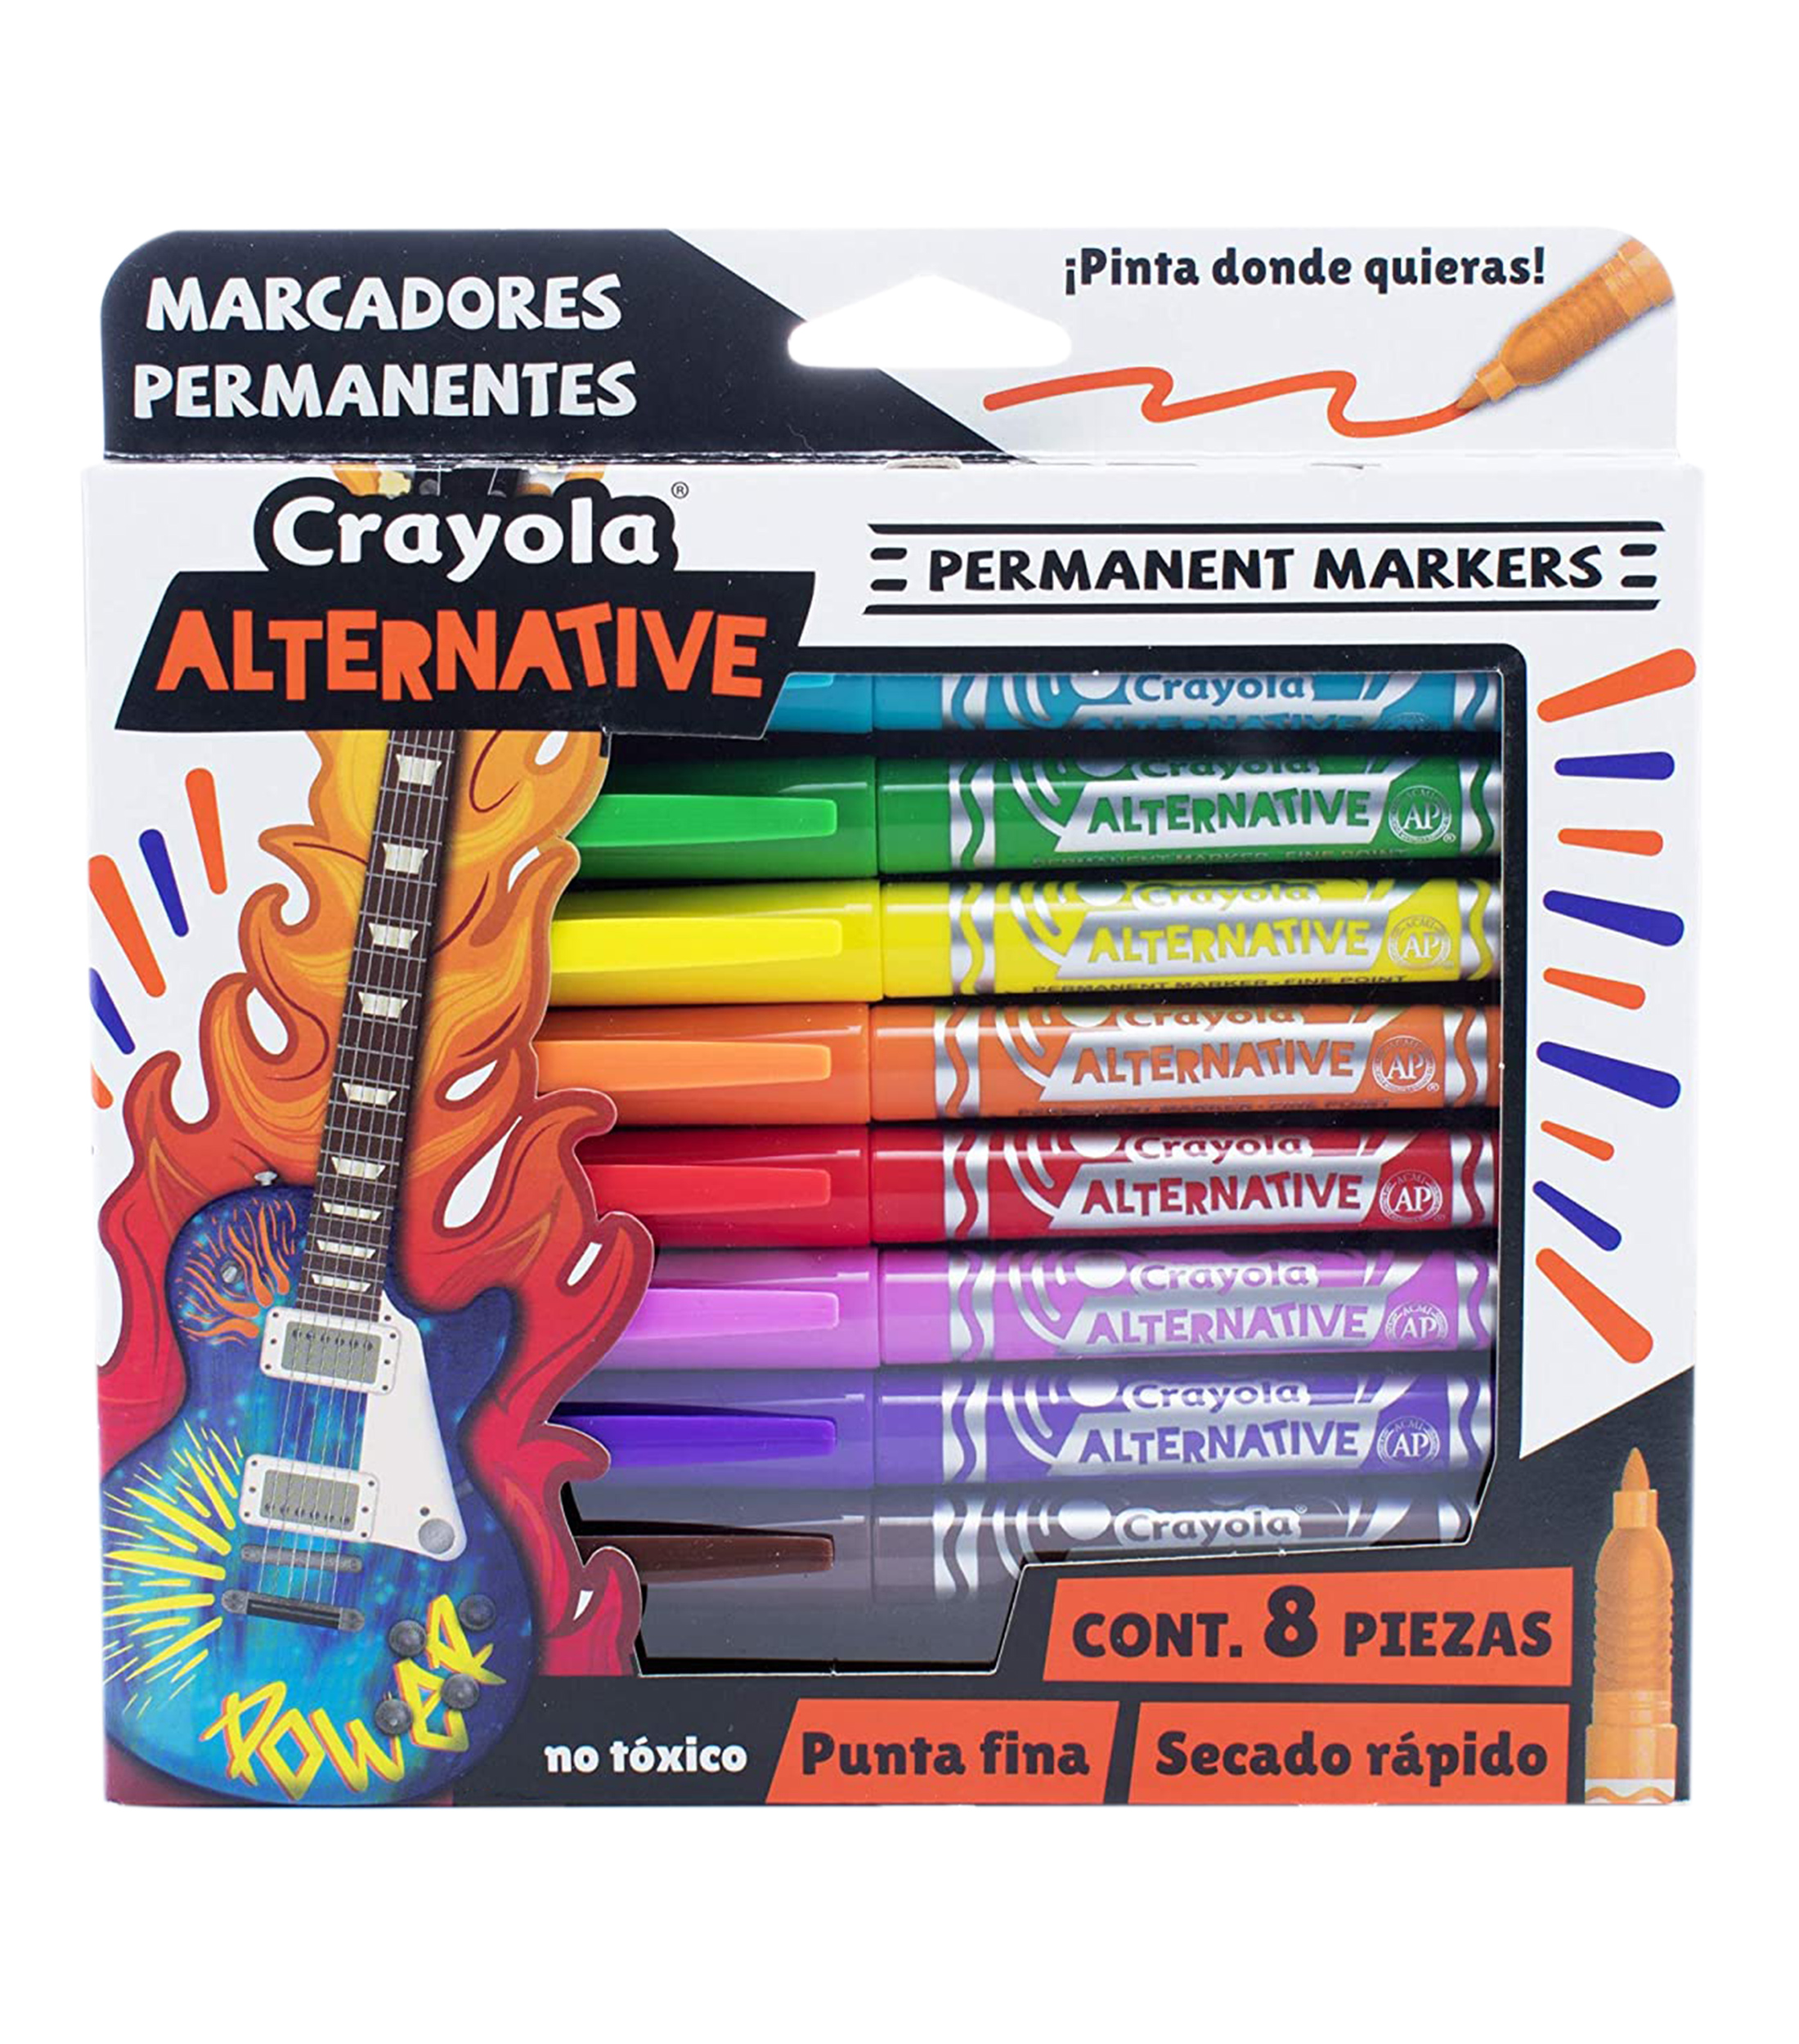 Crayola Marker Maker Kit de Repuesto - El Palacio de Hierro